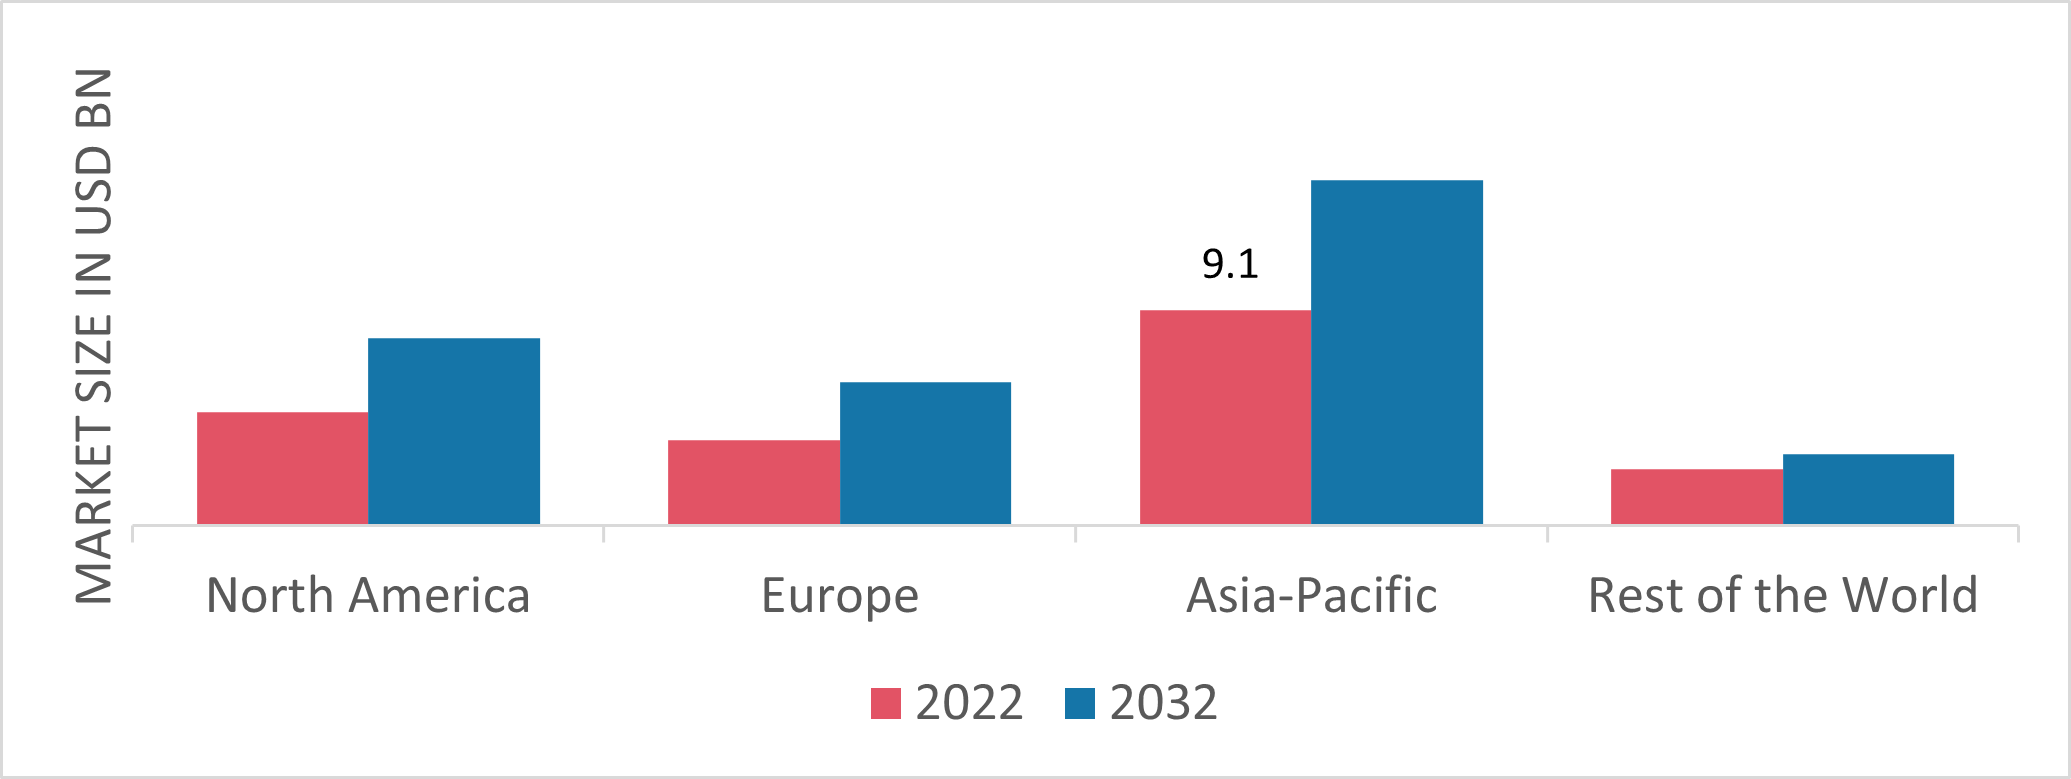 Genset Market Share By Region 2022 (USD Billion)